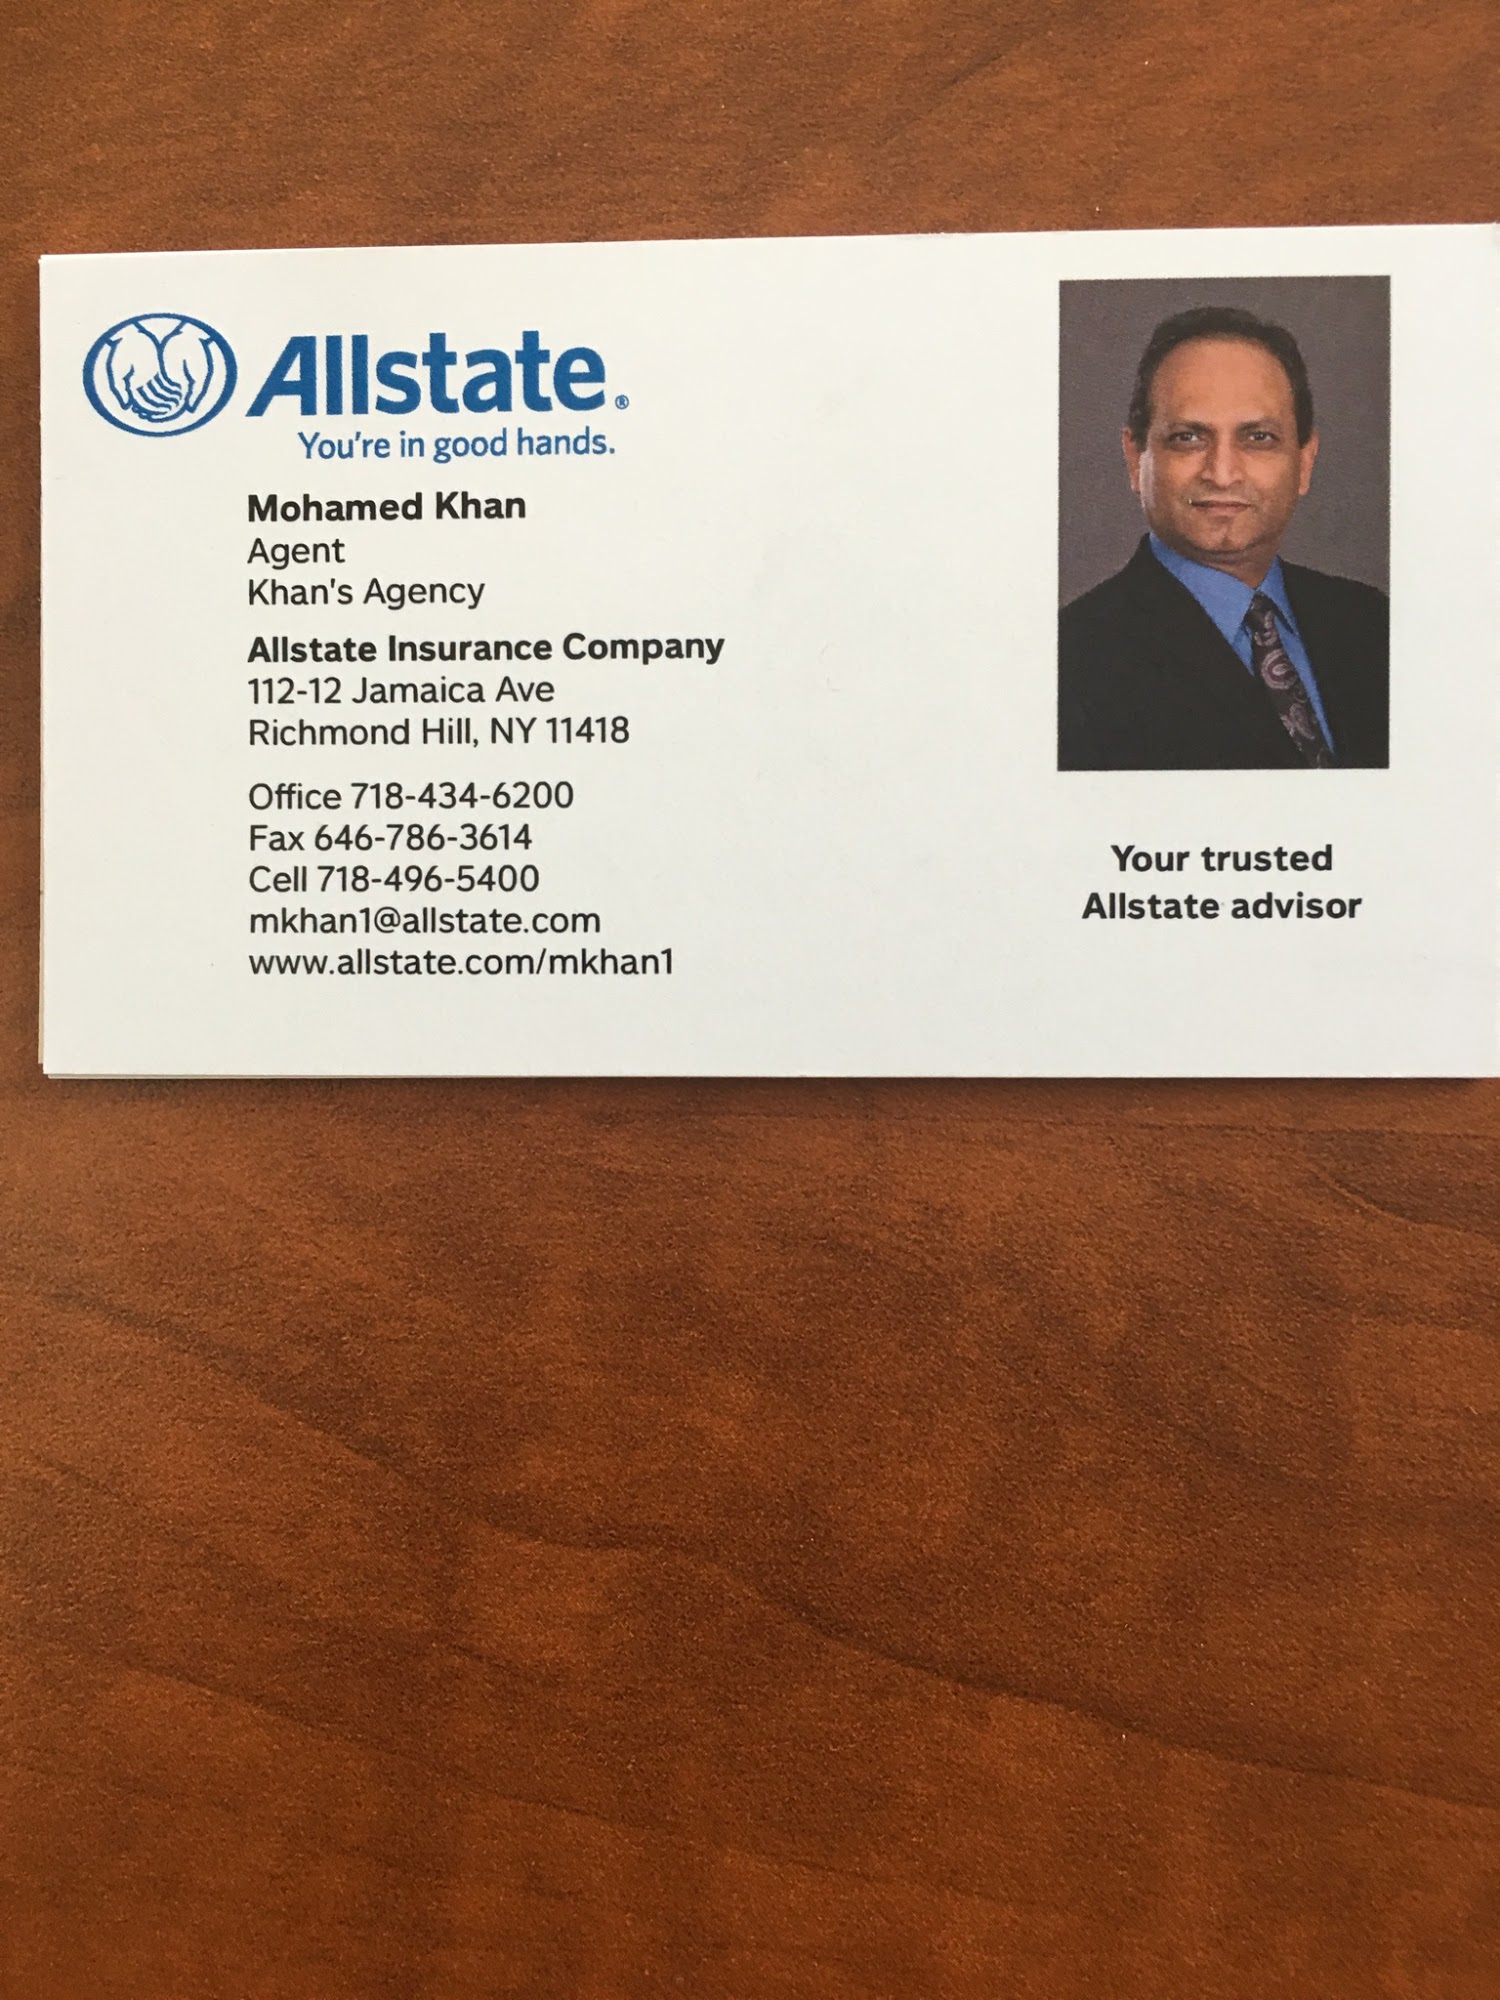 Mohamed Khan: Allstate Insurance